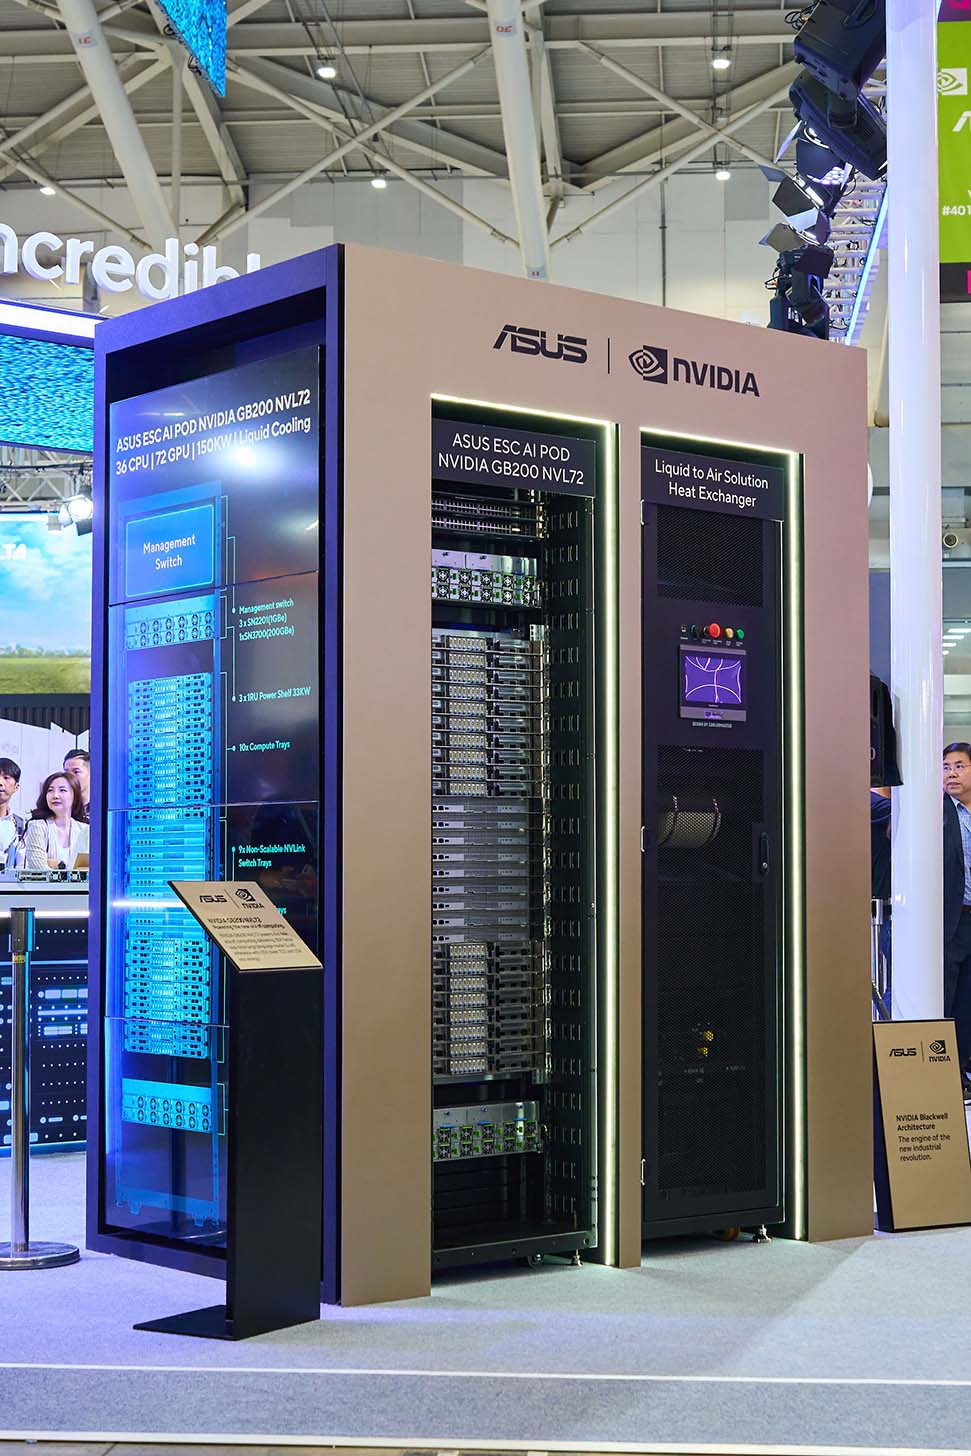 ASUS 展出消費級的 AI PC 與專為 AI 運算打造的 GB200 NVL72 伺服器組。